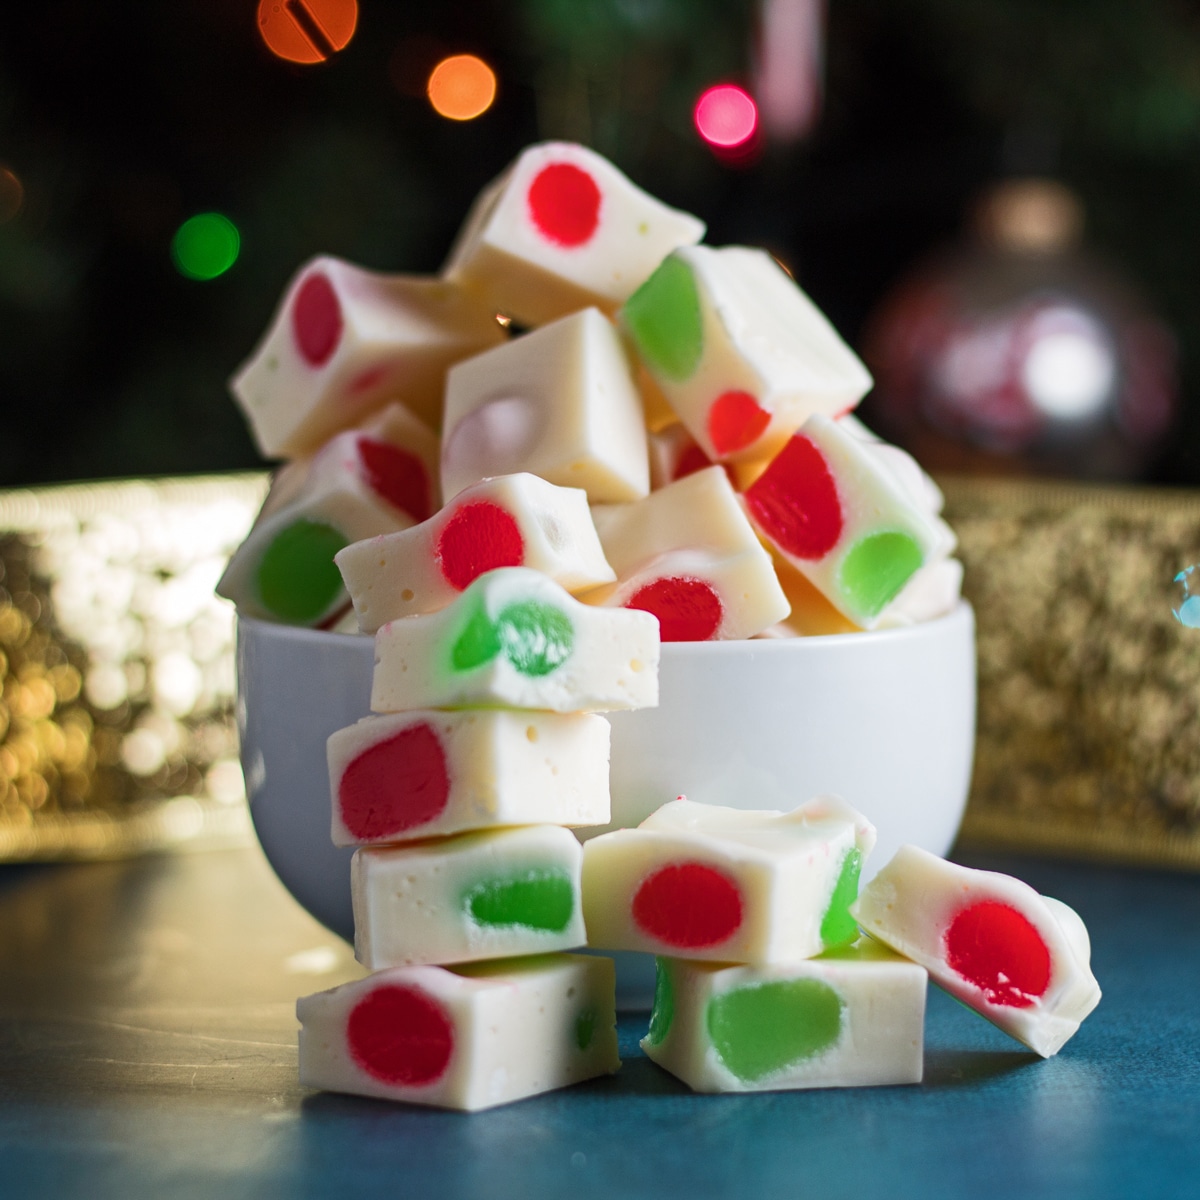 Изображение сбоку рождественских конфет Nougat в миске.